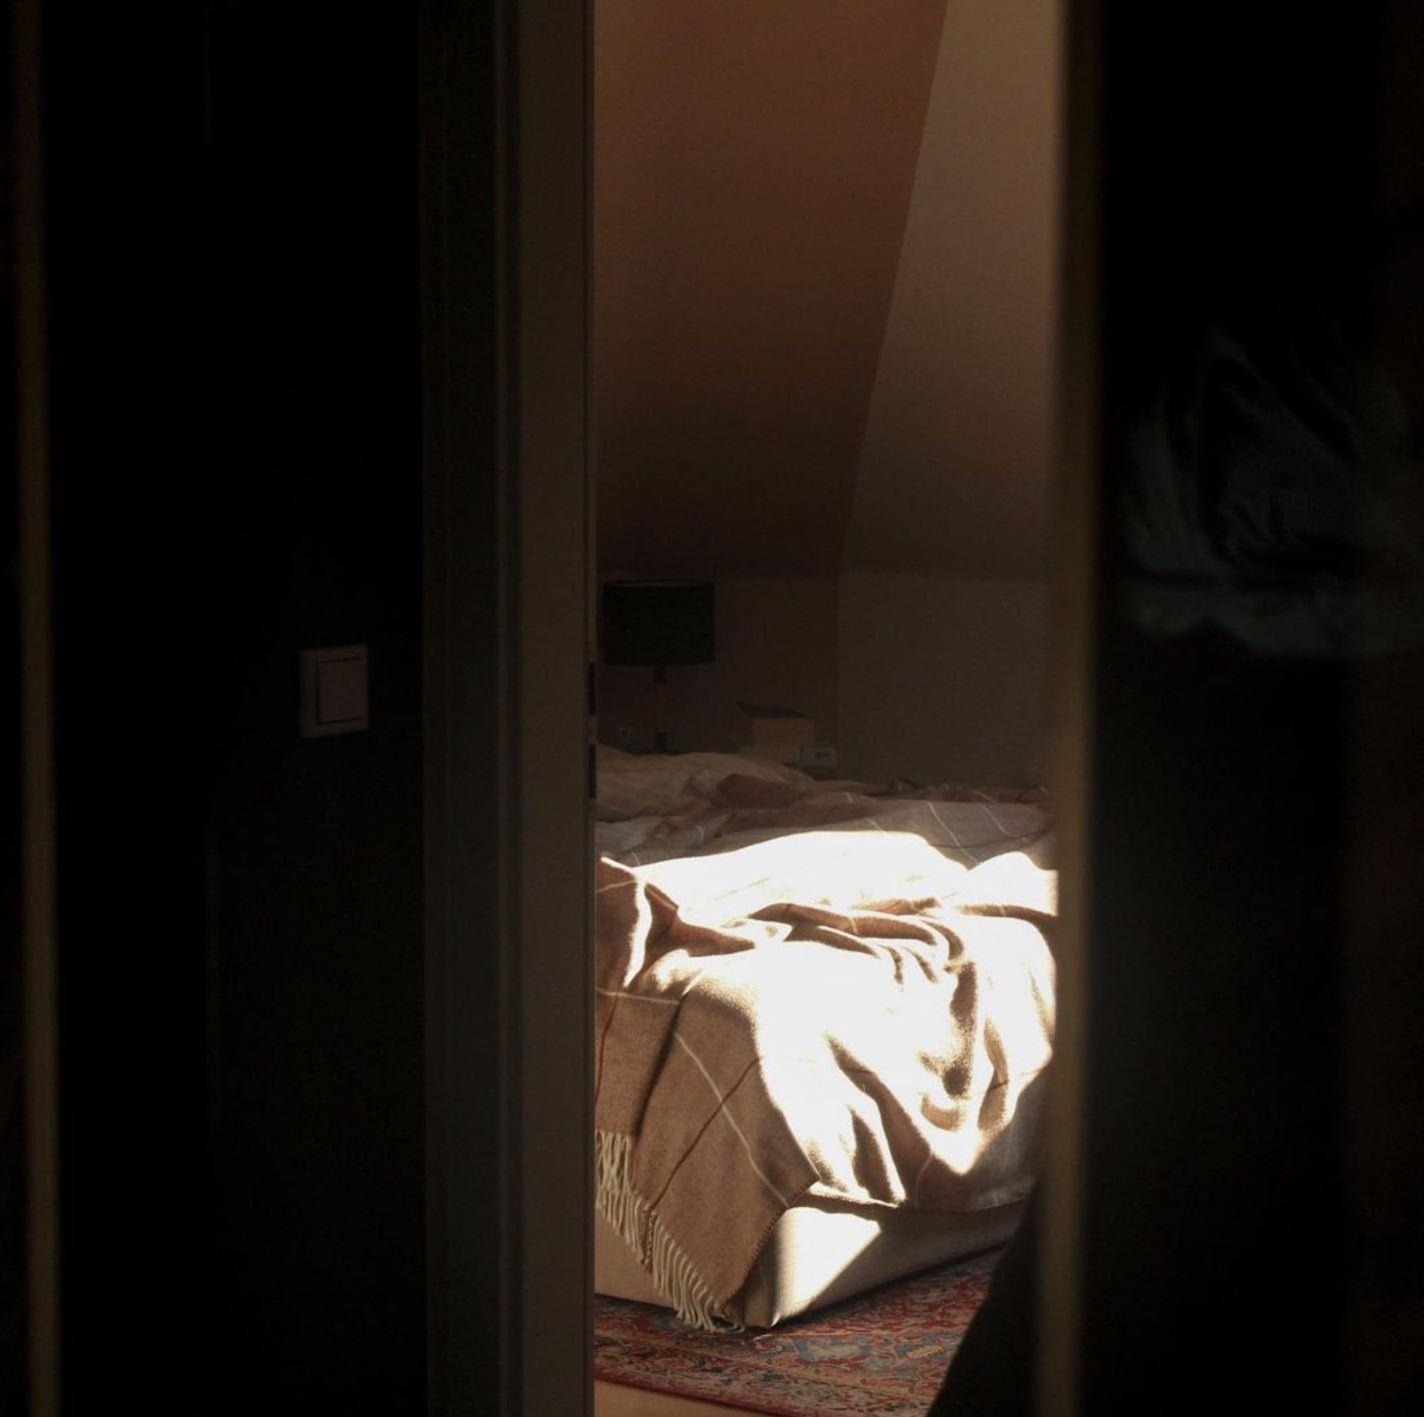 Sneak Peak ins Schlafzimmer
#favouriteplace #sonnenlicht #leinen